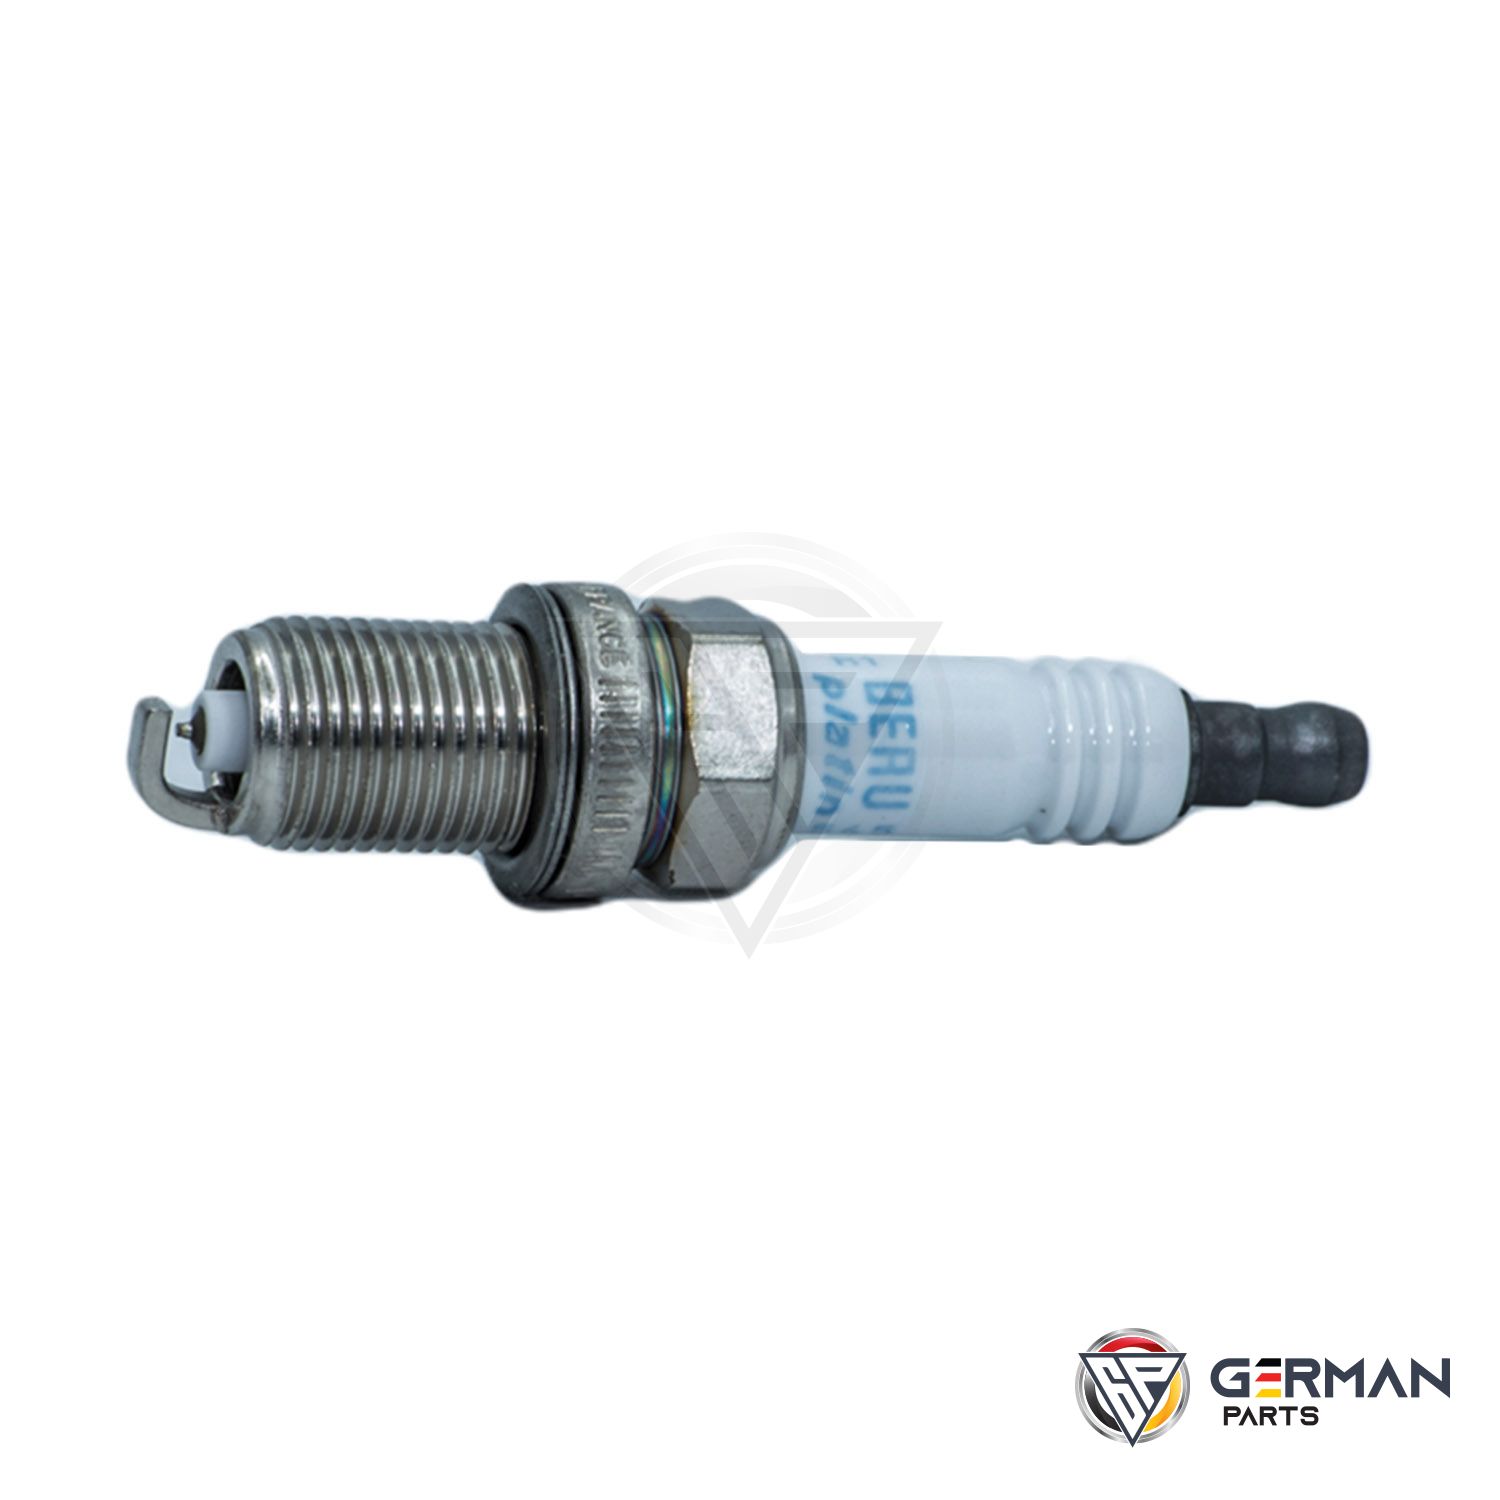 Buy Porsche Spark Plug 99917022190 - German Parts